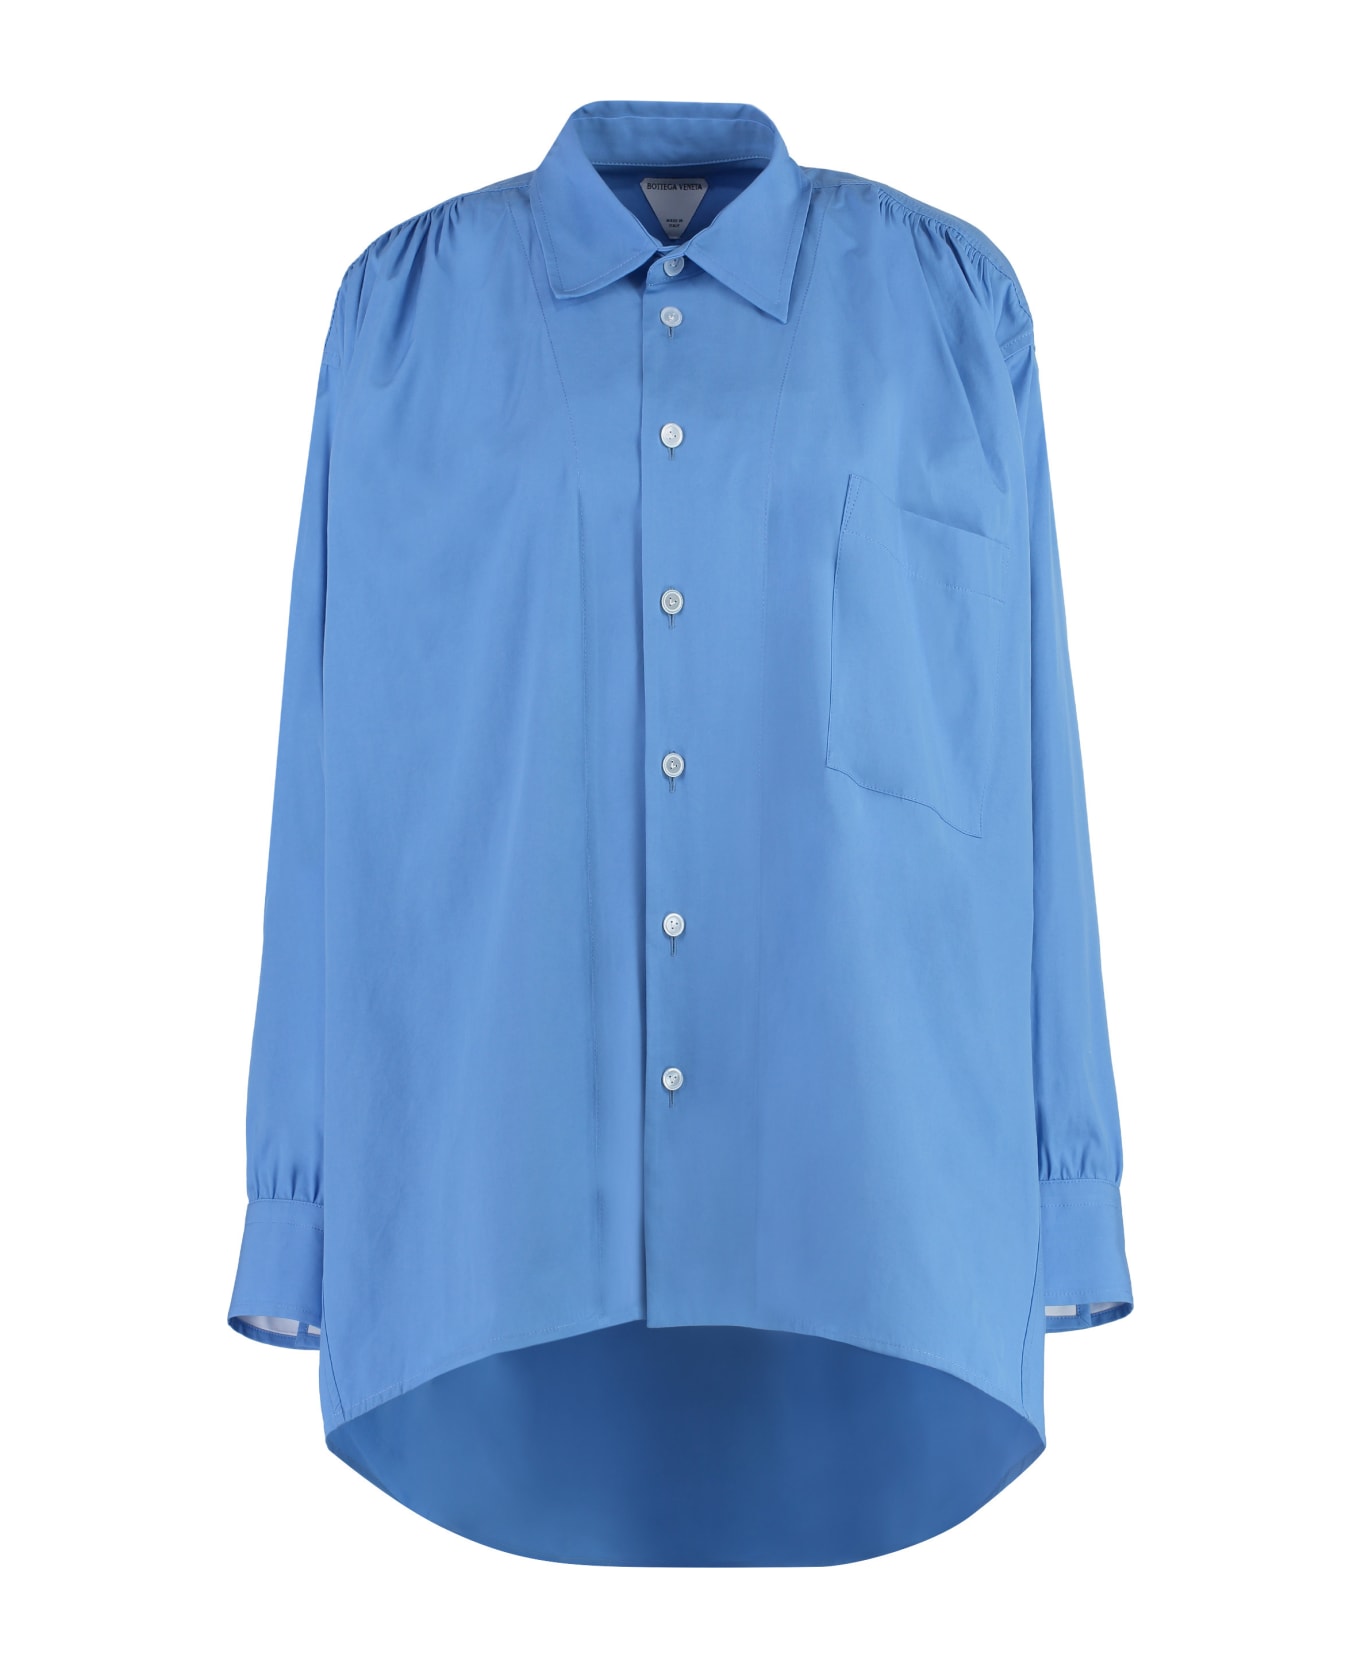 Bottega Veneta Cotton Shirt - Light Blue